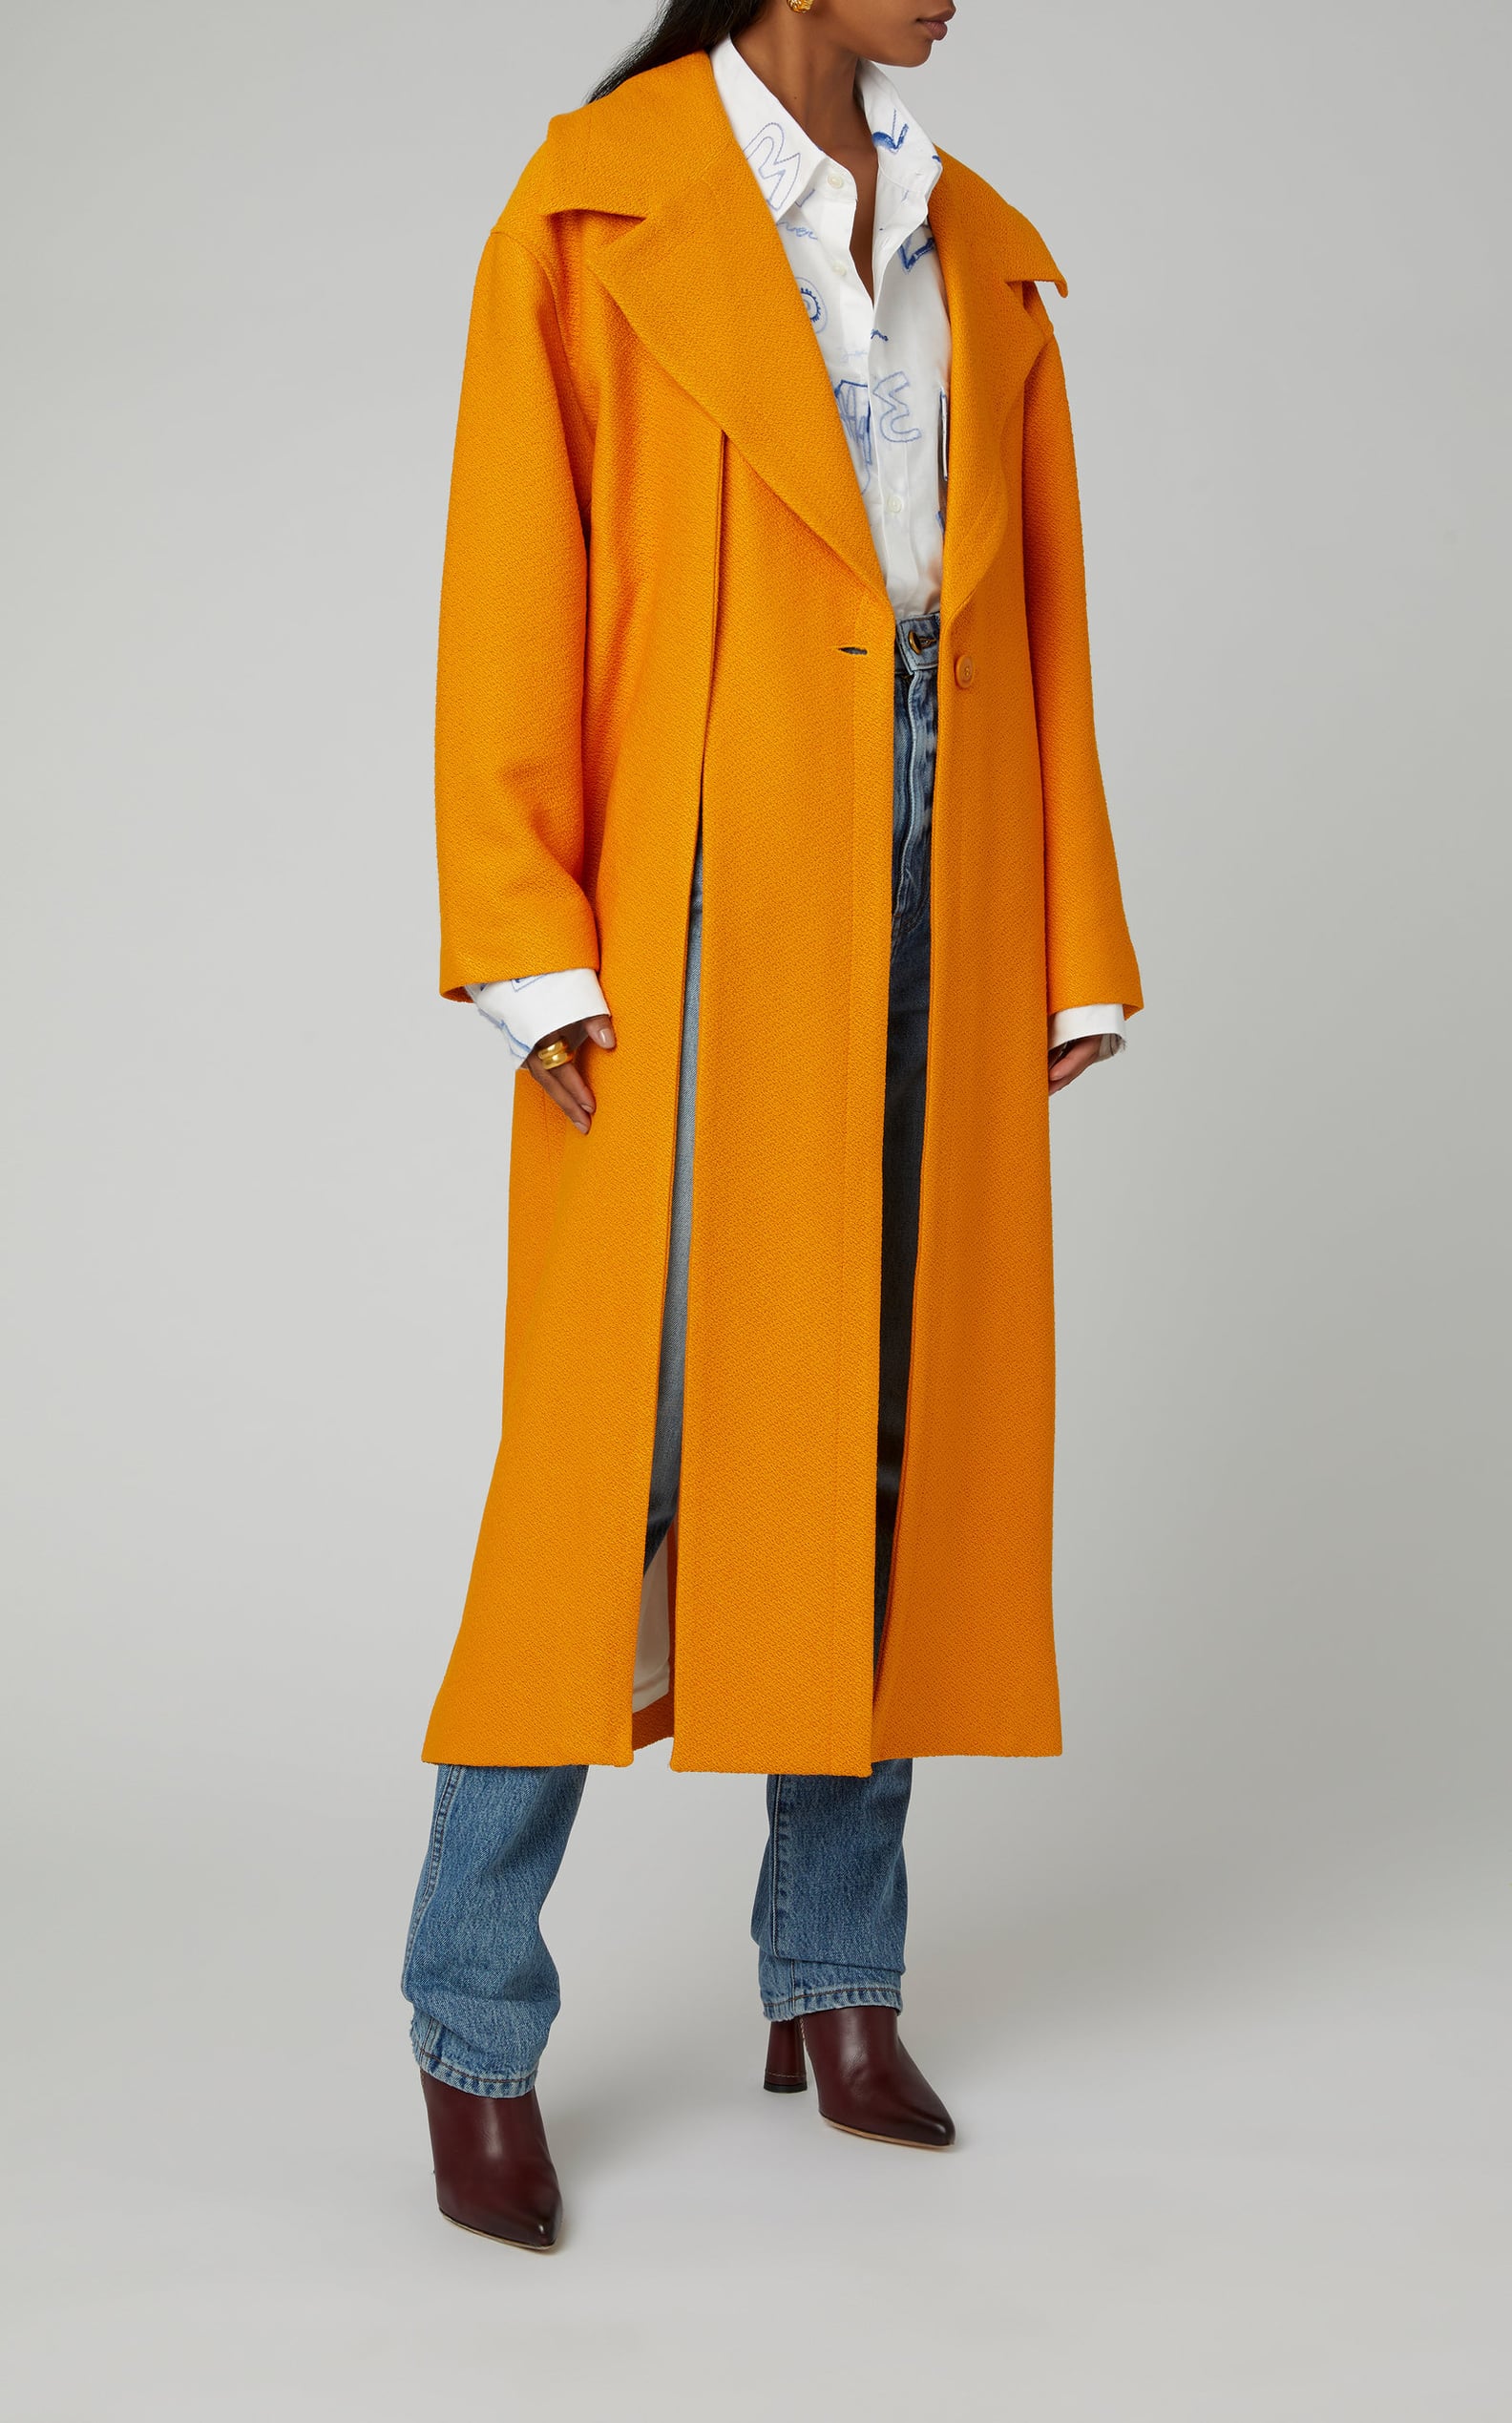 Best Designer Coats For Women on Sale | POPSUGAR Fashion